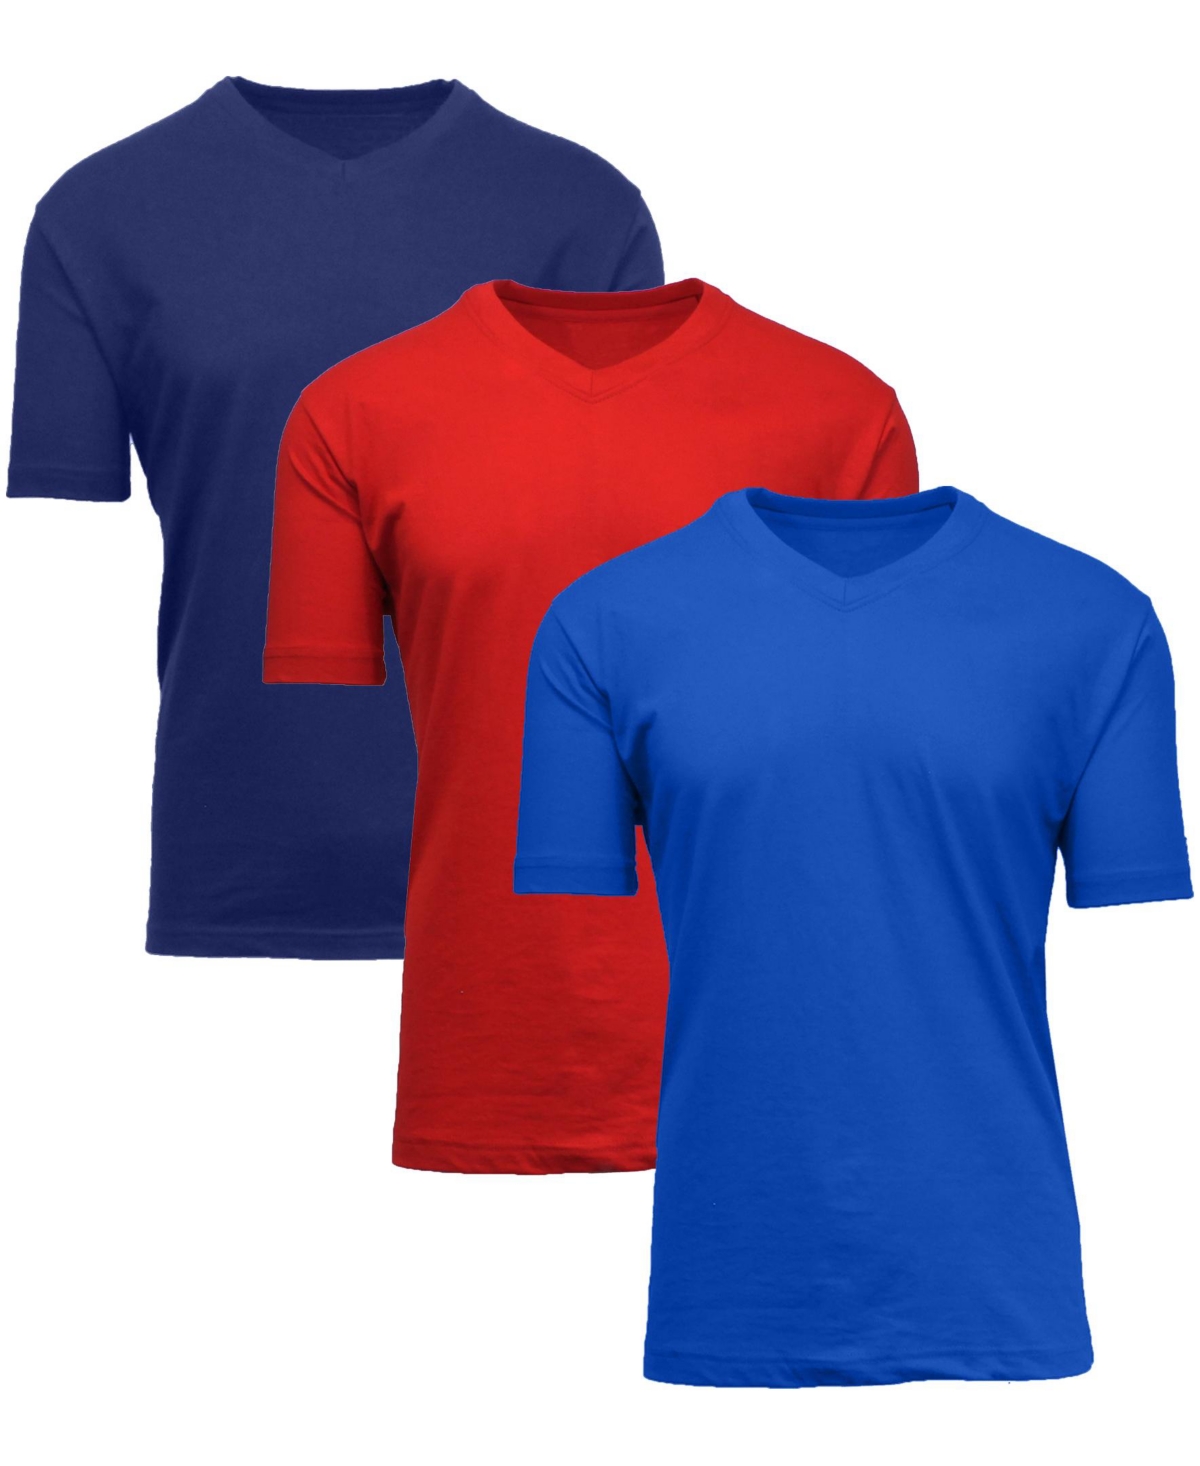 Men's Short Sleeve V-Neck T-shirt, Pack of 3 - Navy-Royal-White